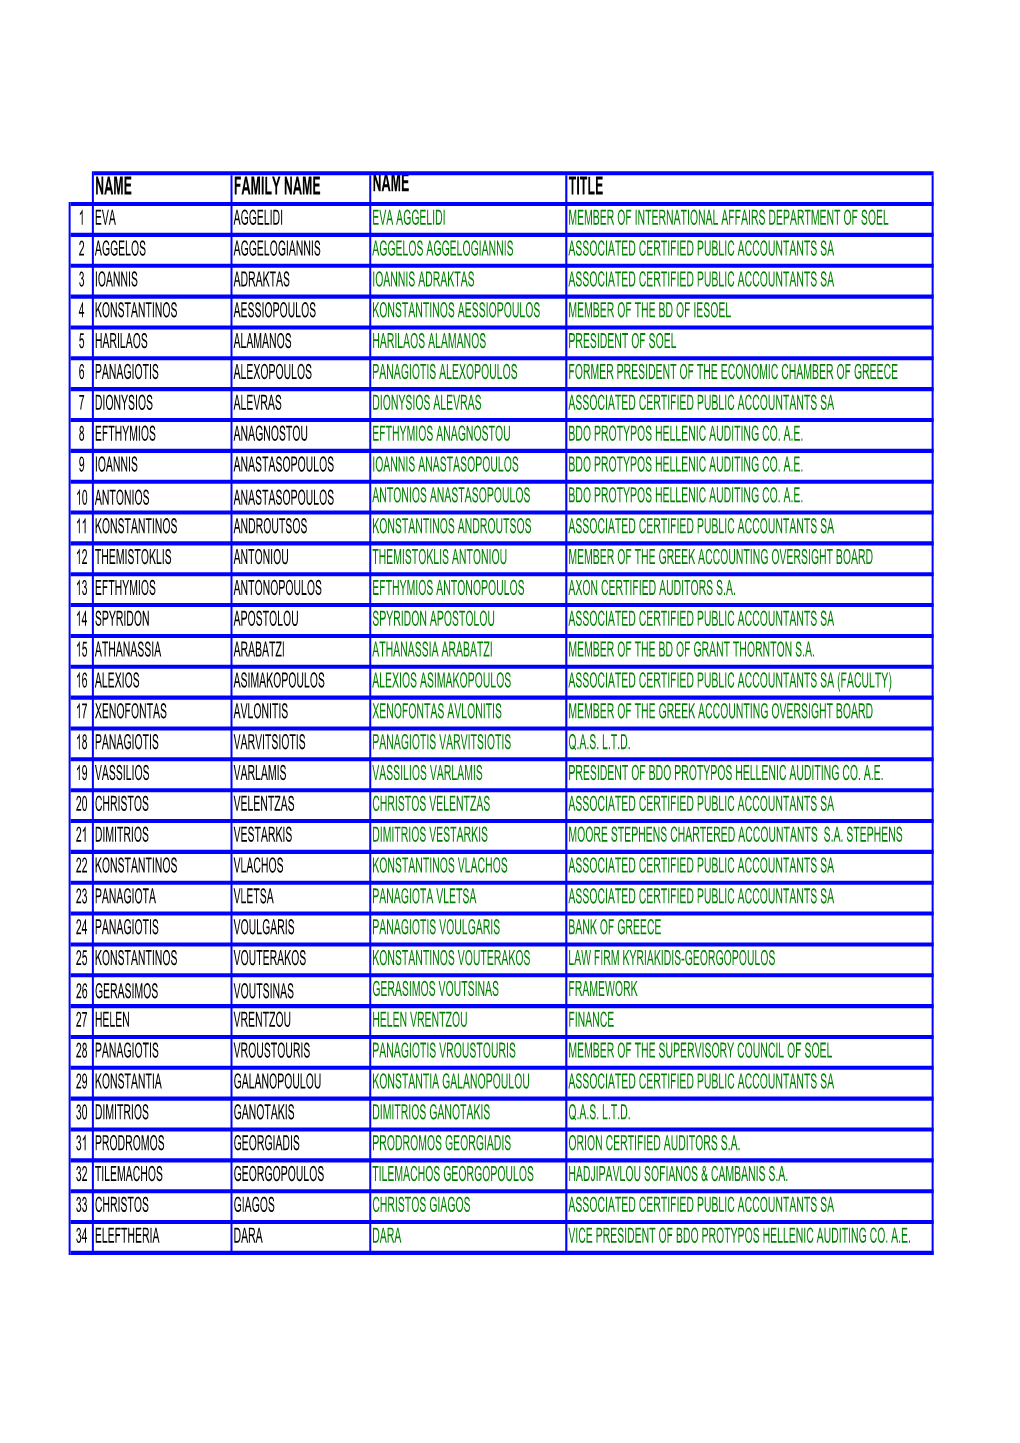 List of Participants En